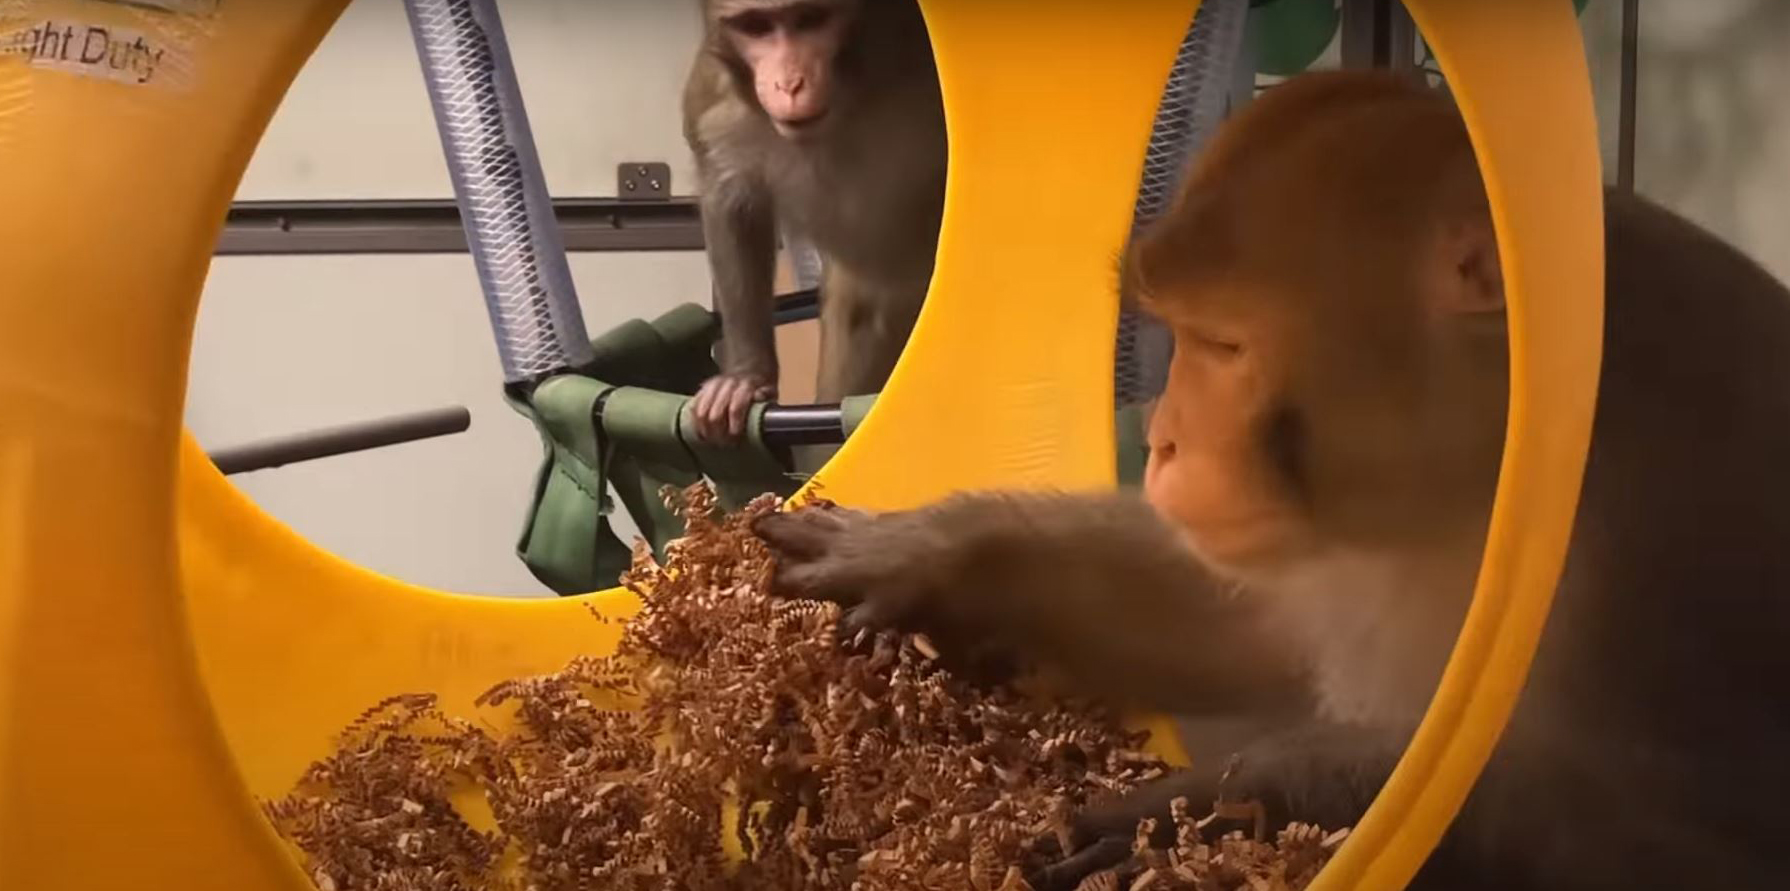 Un grupo de médicos denuncia la muerte de una docena de monos en los ensayos de chips cerebrales de Elon Musk